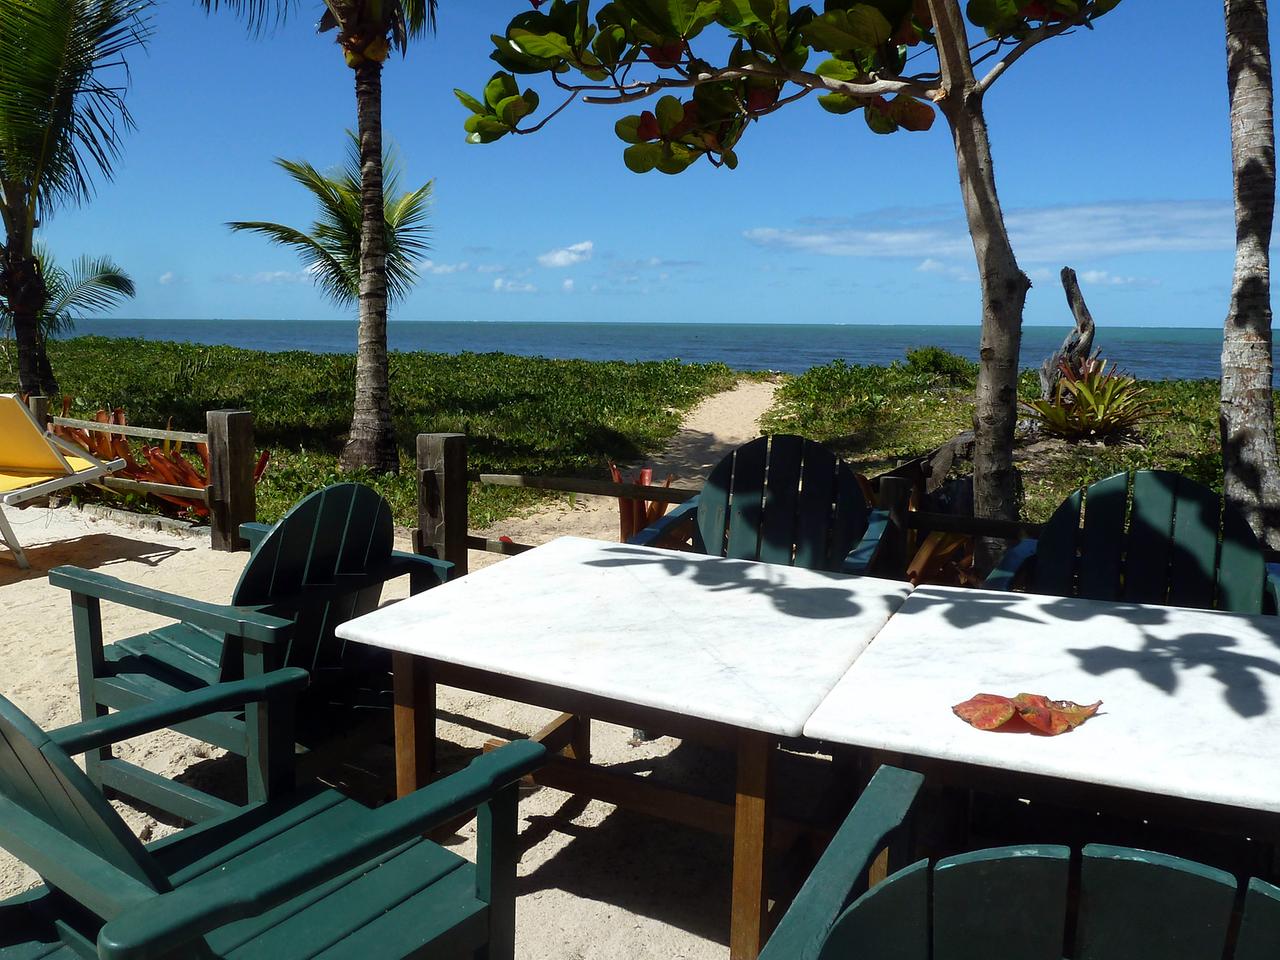 Tische und Stühle stehen auf eine Veranda unter Bäumen und mit Blick auf den Strand und das Meer.